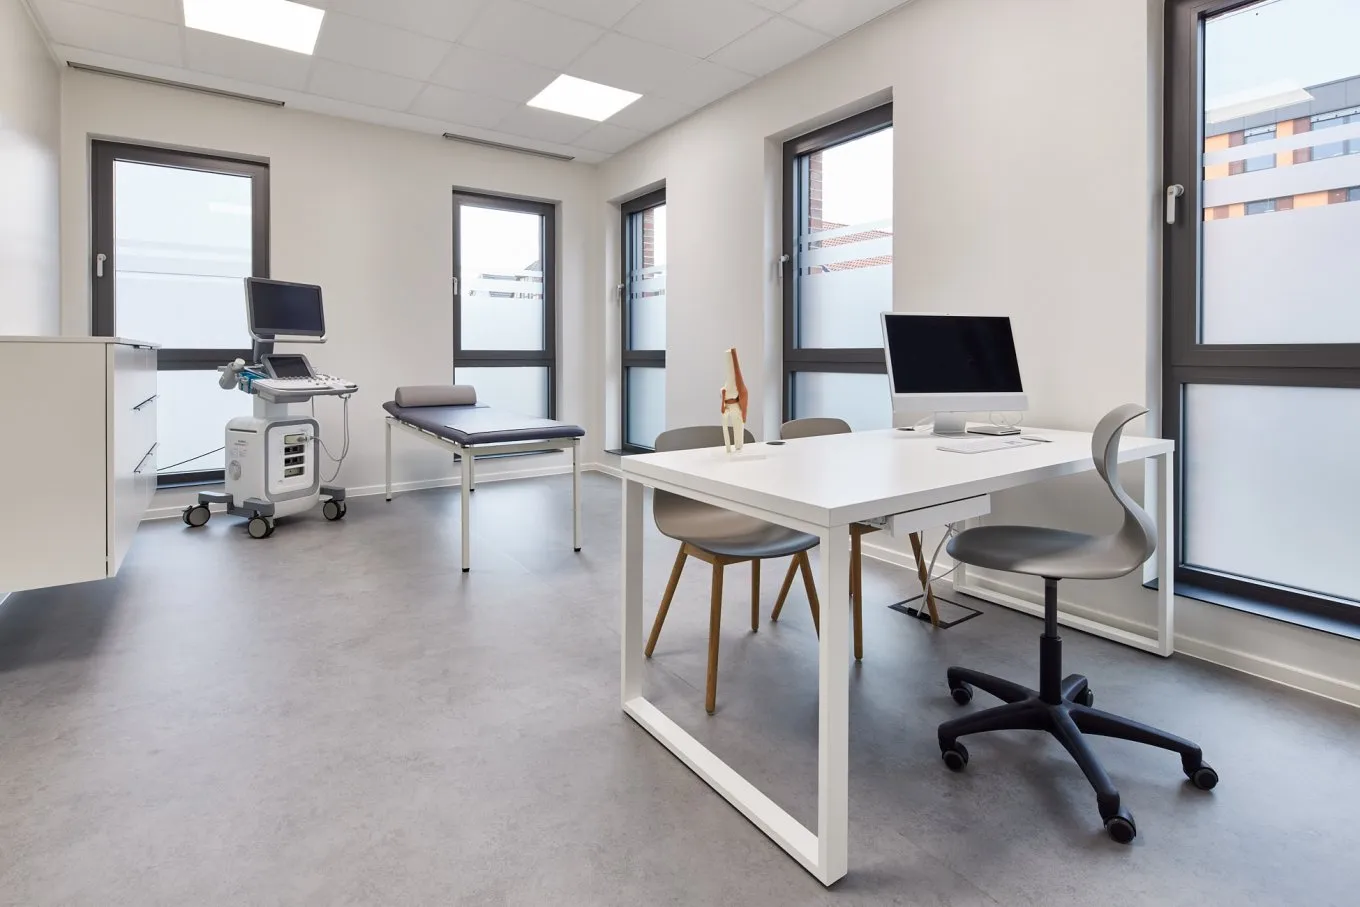 Behandlungszimmer mit moderner Einrichtung und grauem Bodenbelag im August Carree Oldenburg